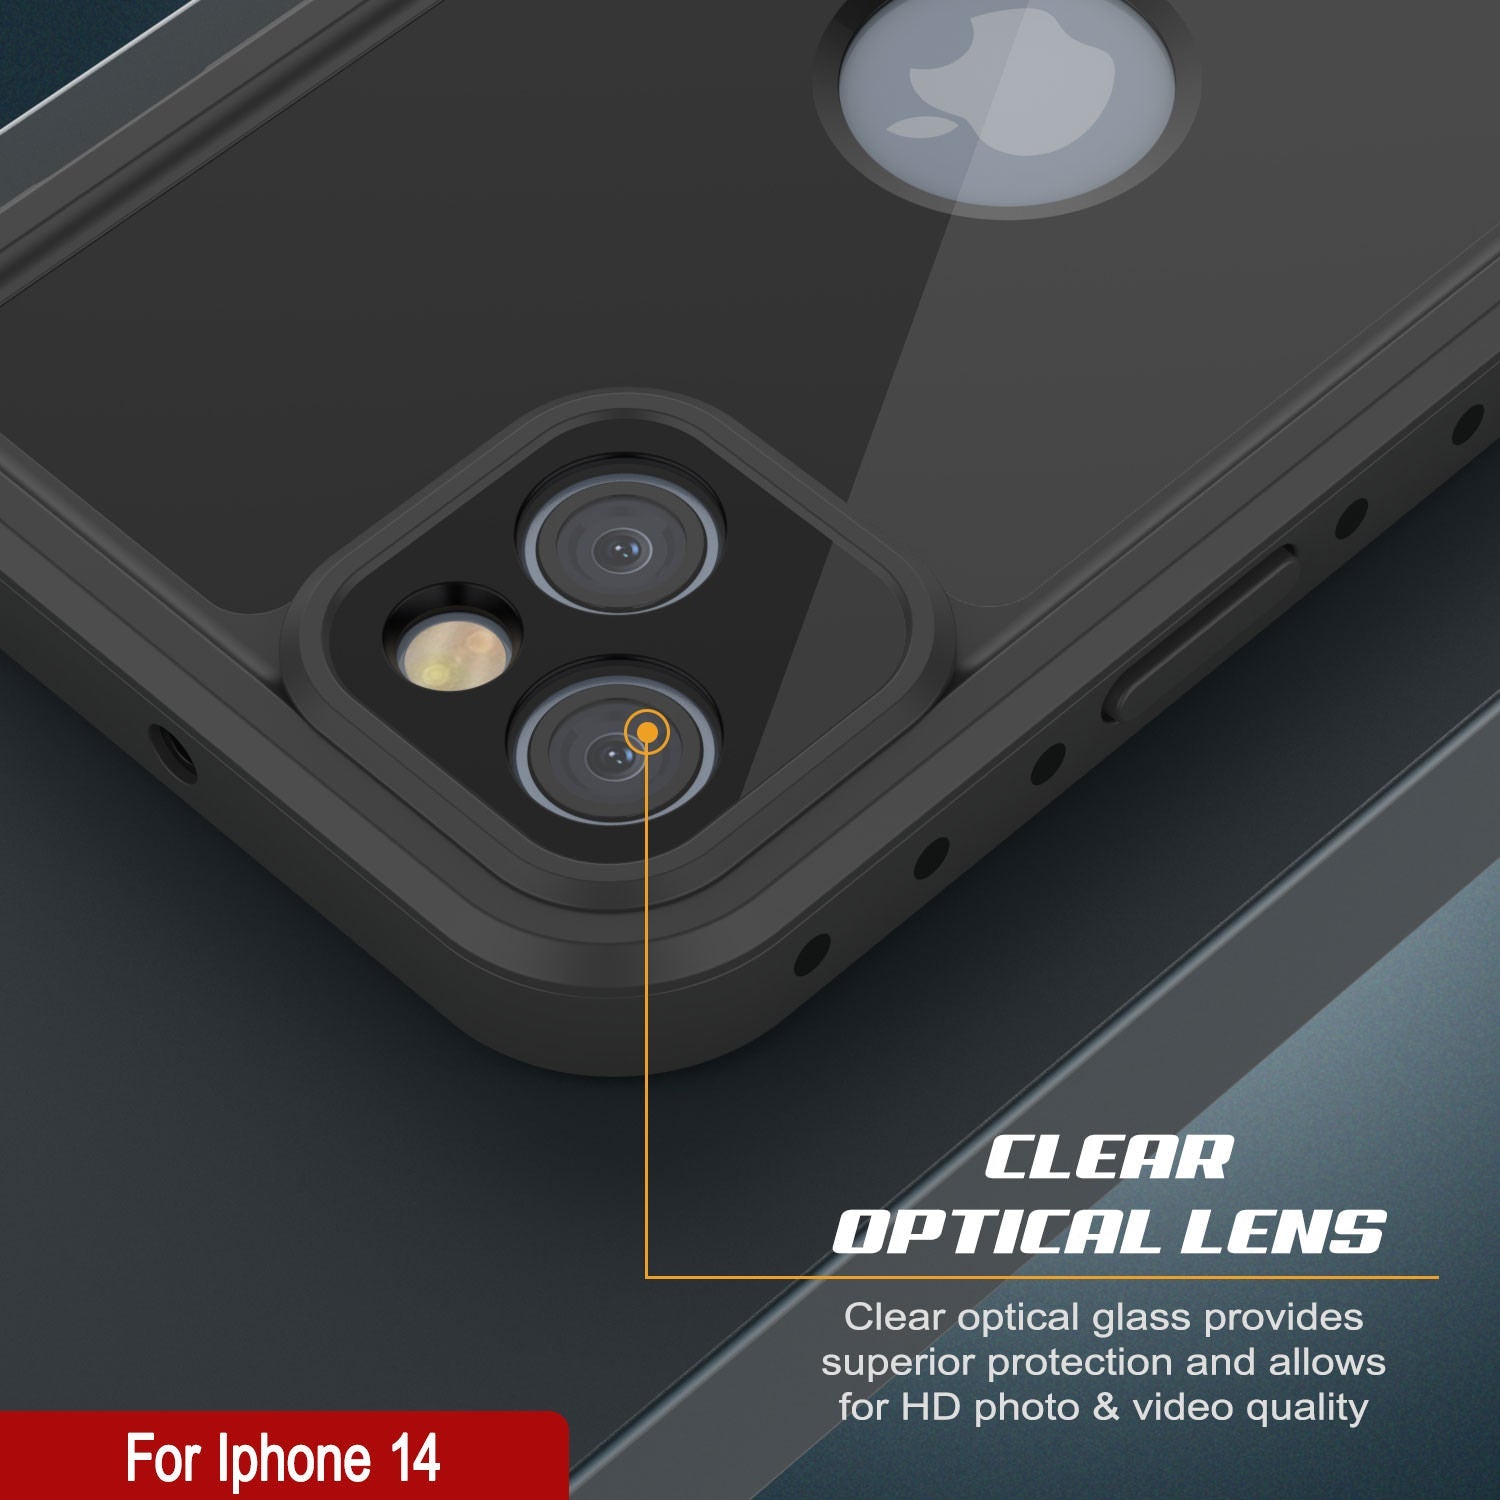 iPhone 14 Waterproof IP68 Case, Punkcase [Black] [StudStar Series] [Slim Fit]